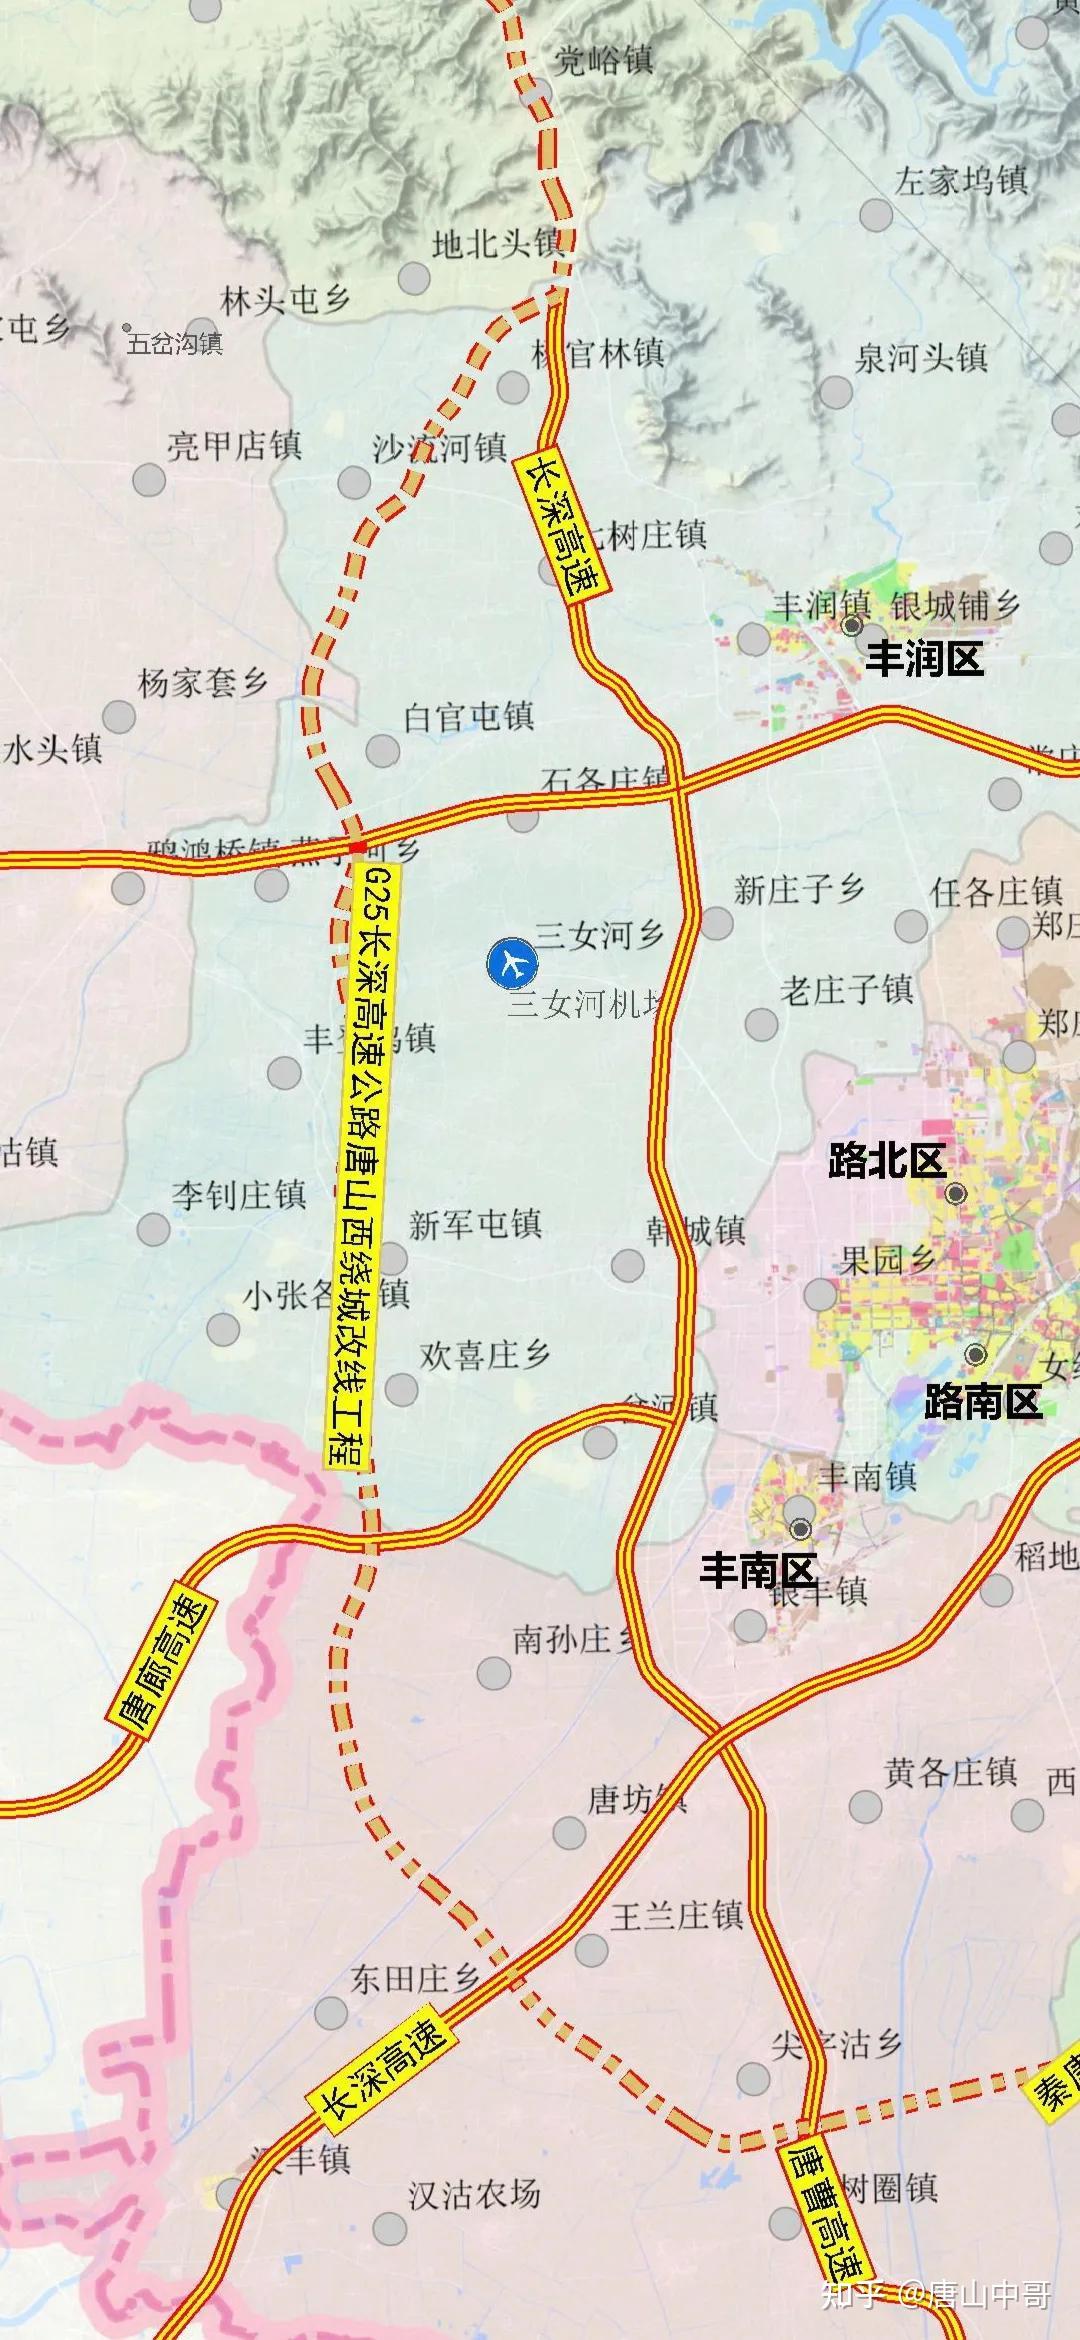 线路从丰润区和遵化市交界处的杨官林镇引出,经过杨官林西,沙流河东